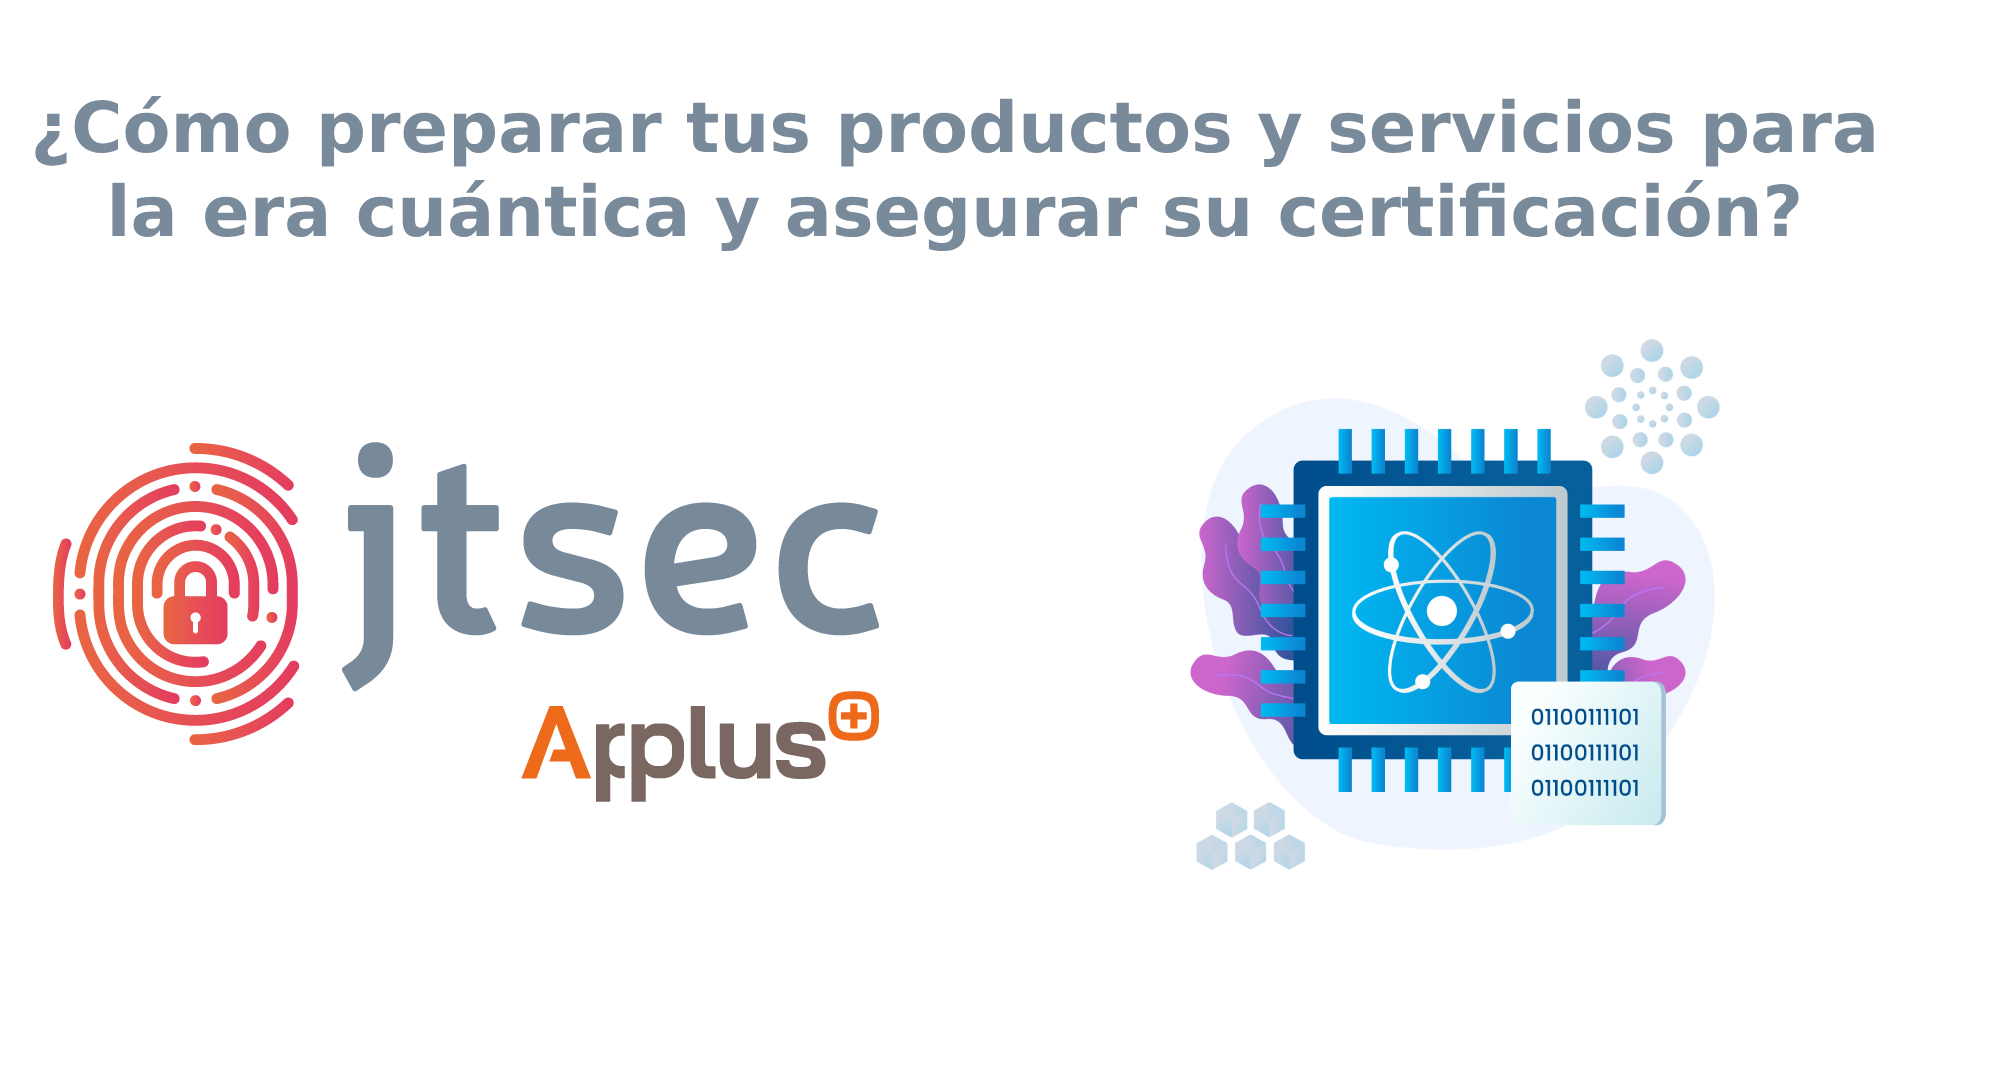  ¿Cómo preparar tus productos y servicios para la era cuántica y asegurar su certificación?